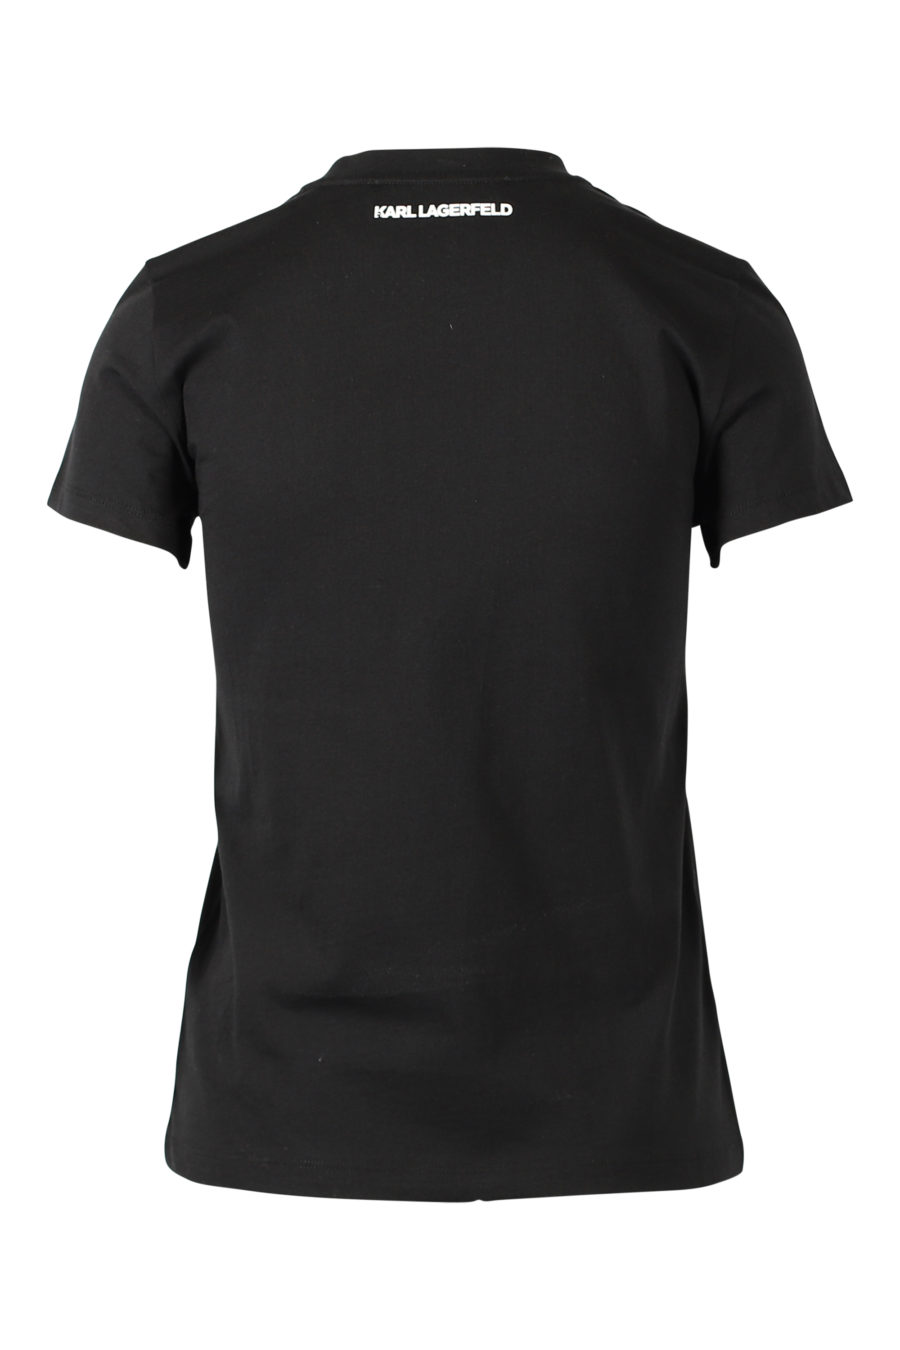 Camiseta negra bordado "Perfil" - IMG 2998